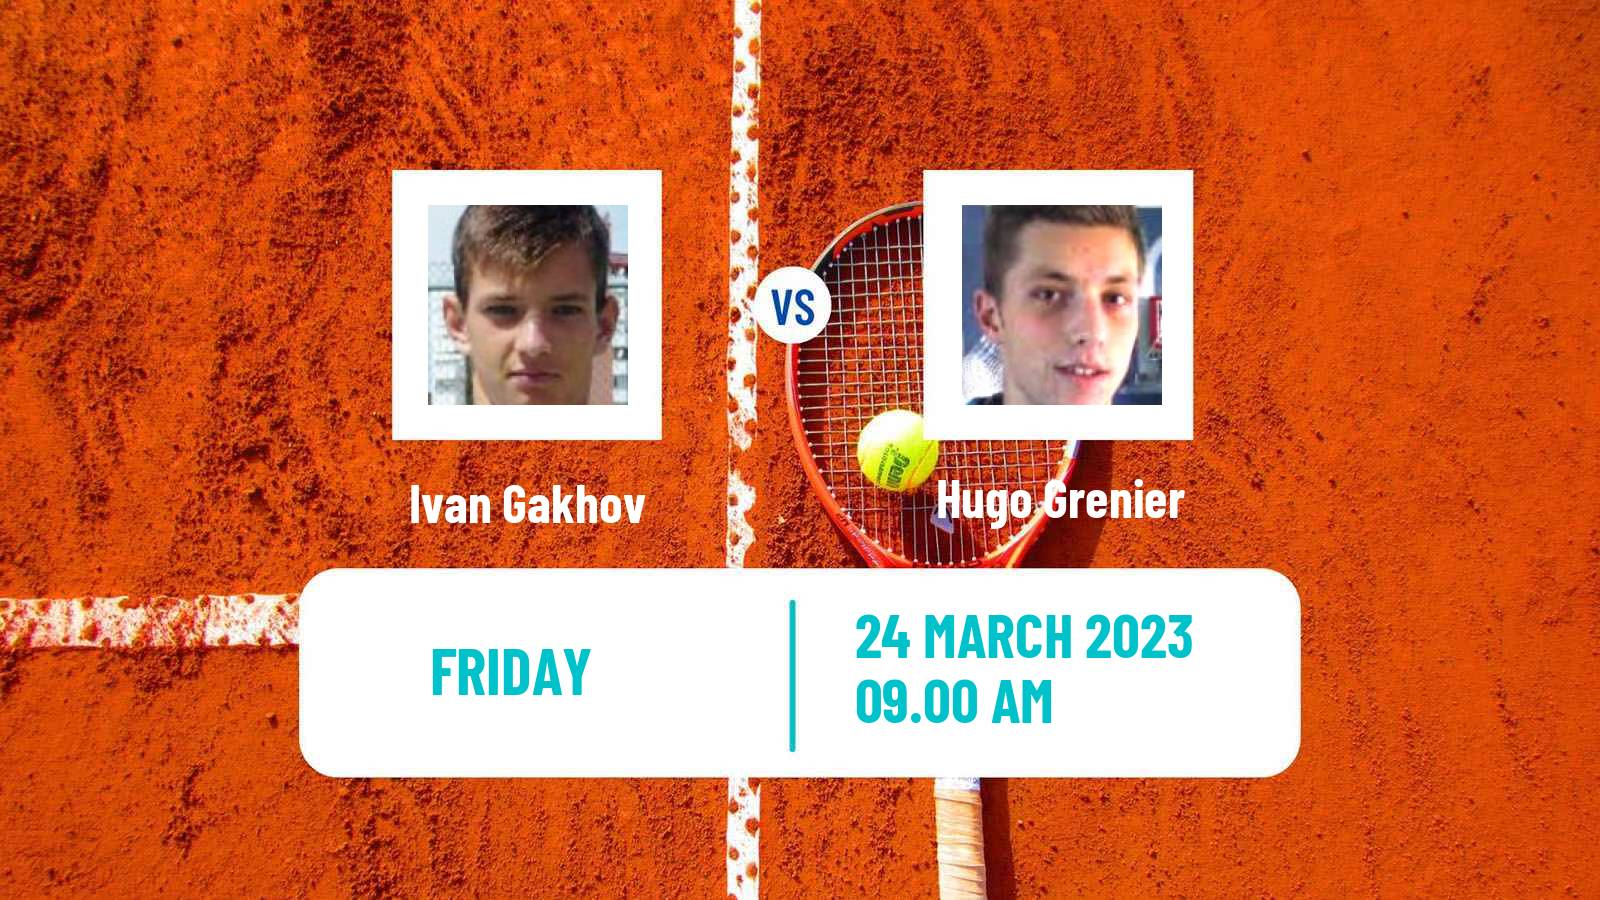 Tennis ATP Challenger Ivan Gakhov - Hugo Grenier